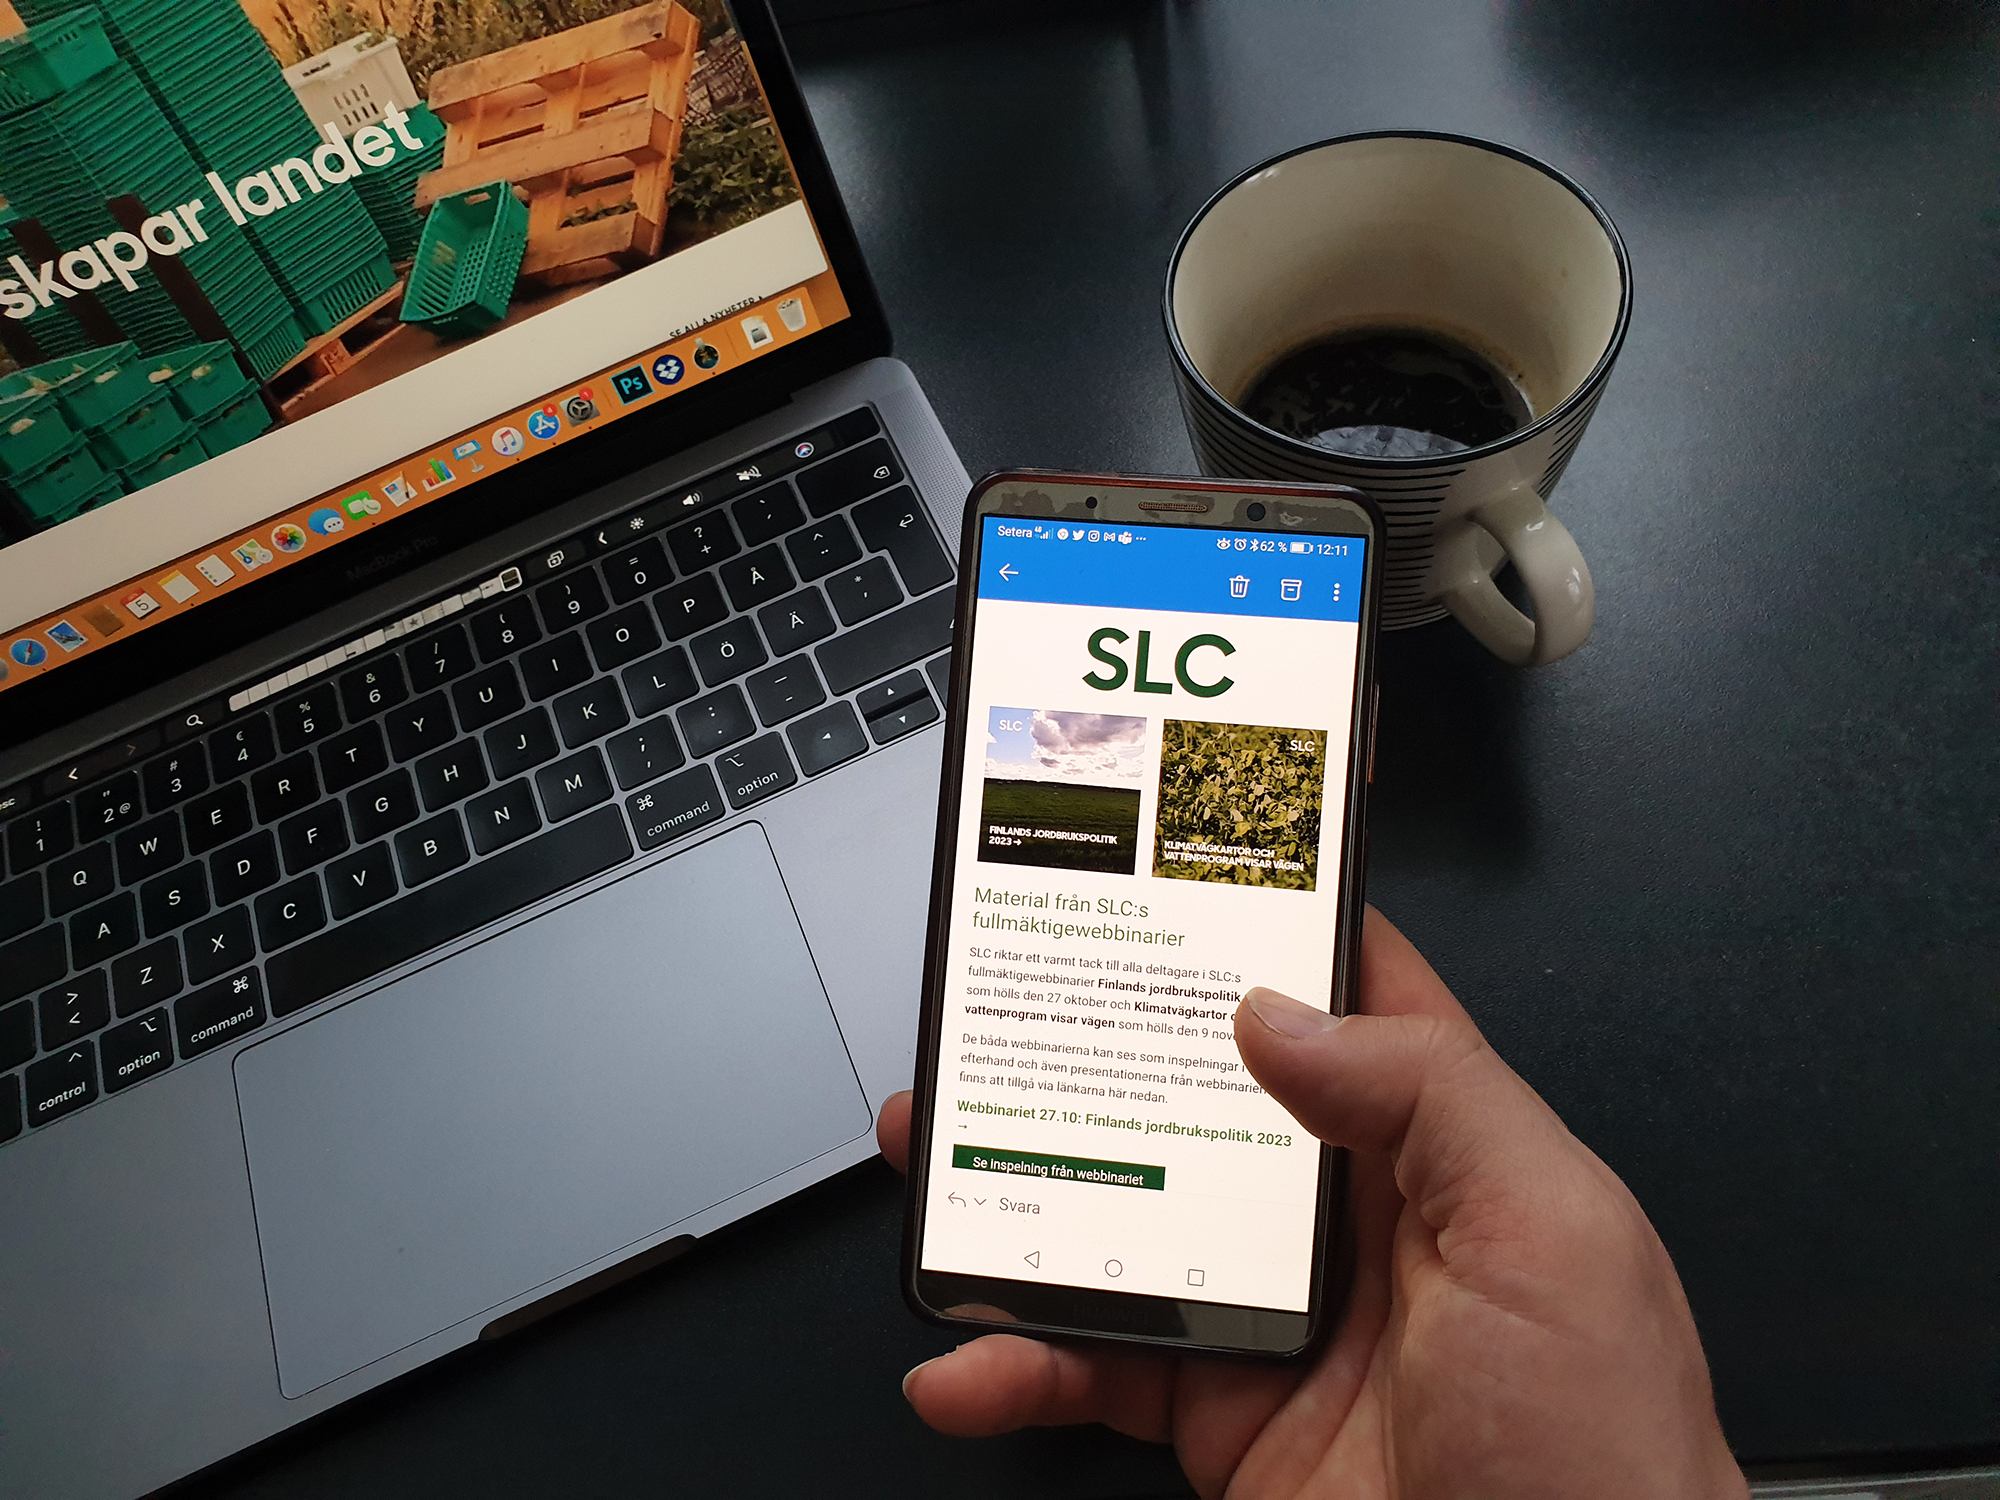 SLC - SLC nyhetsbrev mobil webb